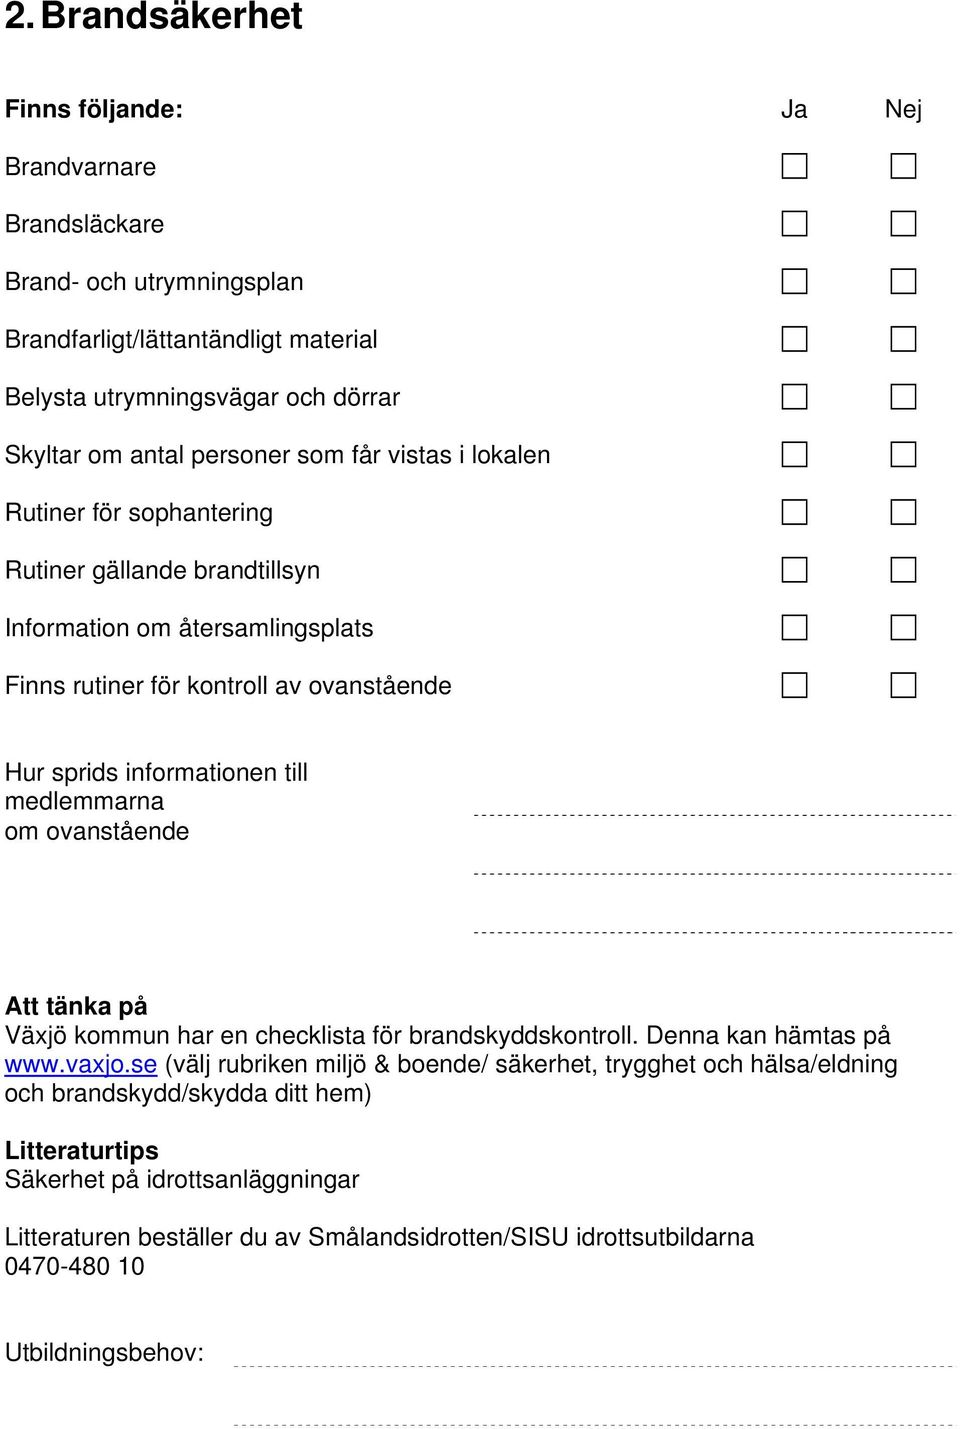 sprids informationen till medlemmarna om ovanstående Växjö kommun har en checklista för brandskyddskontroll. Denna kan hämtas på www.vaxjo.